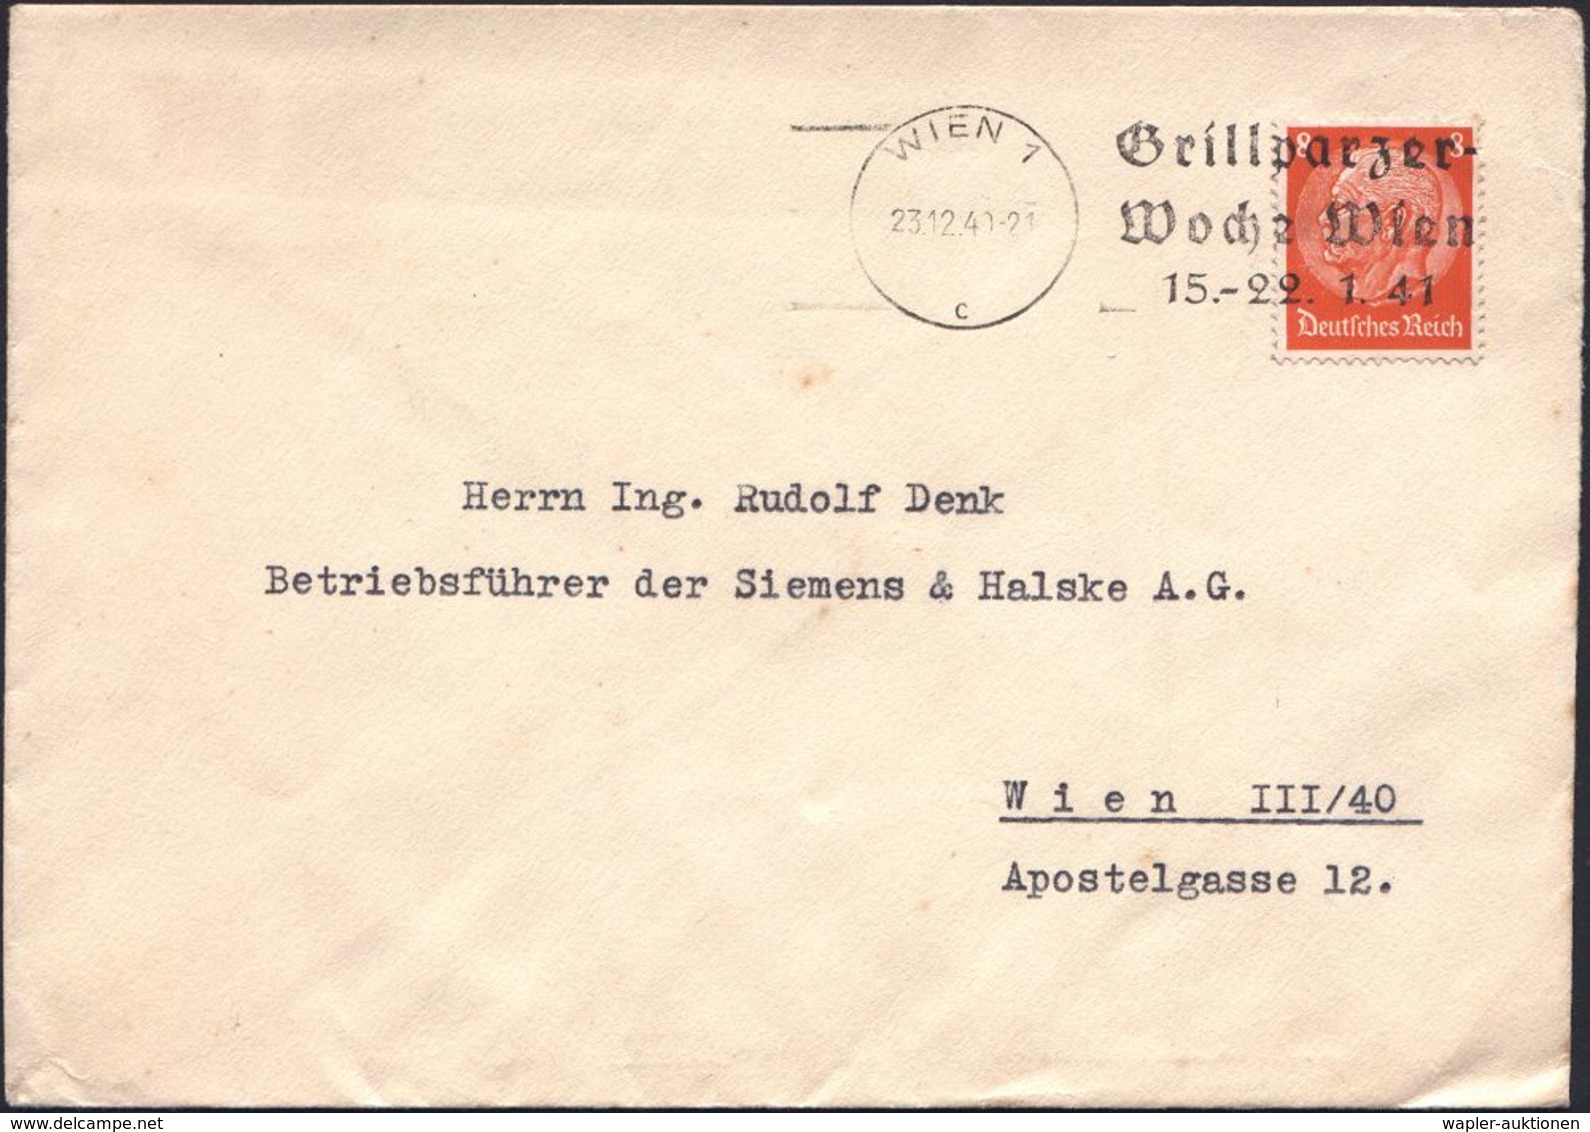 DEUTSCHSPRACHIGE DICHTER & LITERATUR : WIEN 1/ C/ Grillparzer-/ Woche Wien/ 15.-22.1.41 1941 (23.12.) Seltener MWSt, öst - Writers